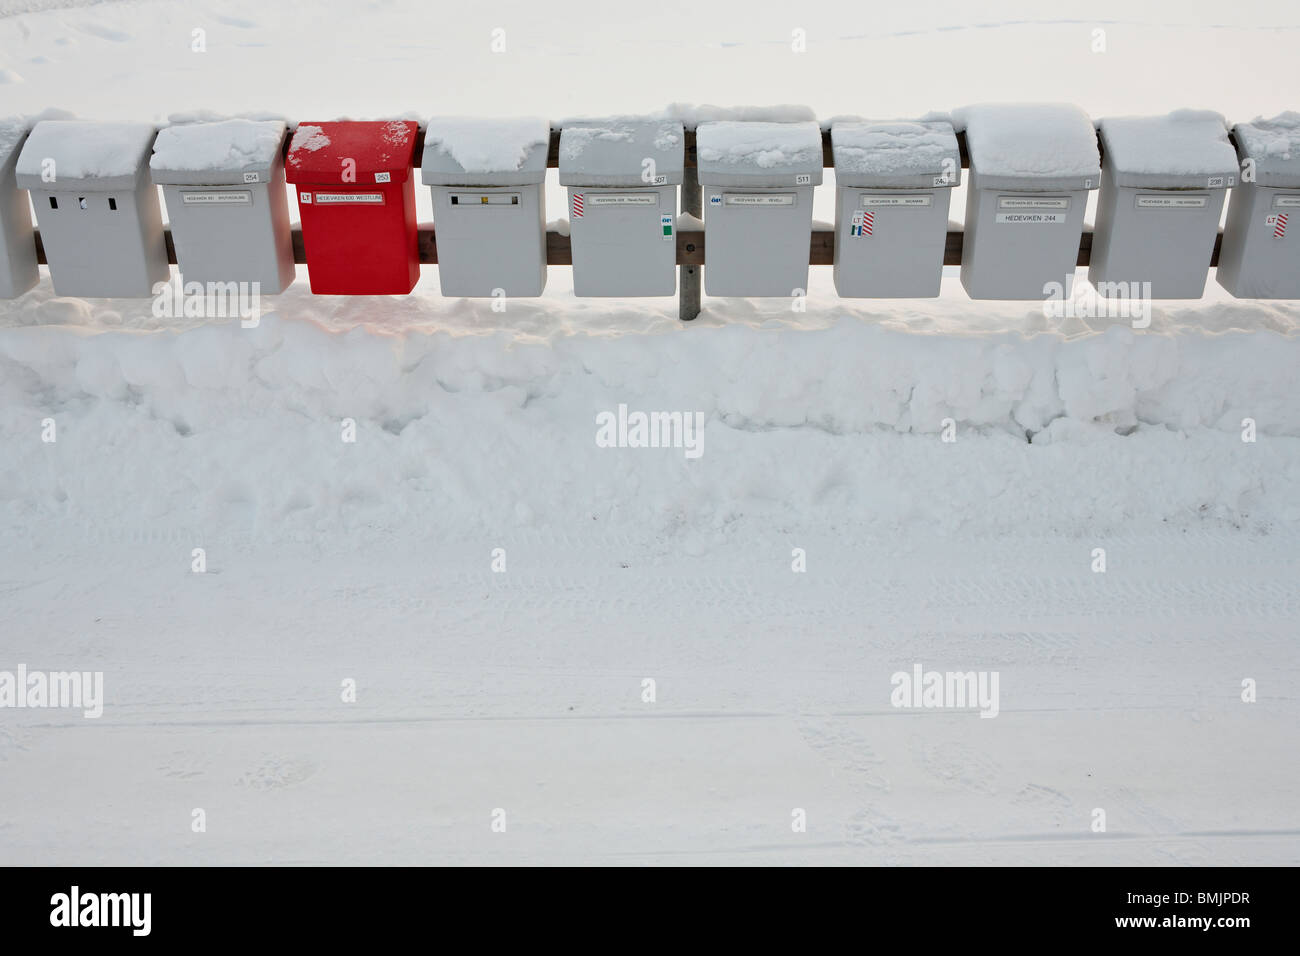 Scandinavia, Sweden, Harjedalen, Vemdalen, View of letterboxes in snow Stock Photo